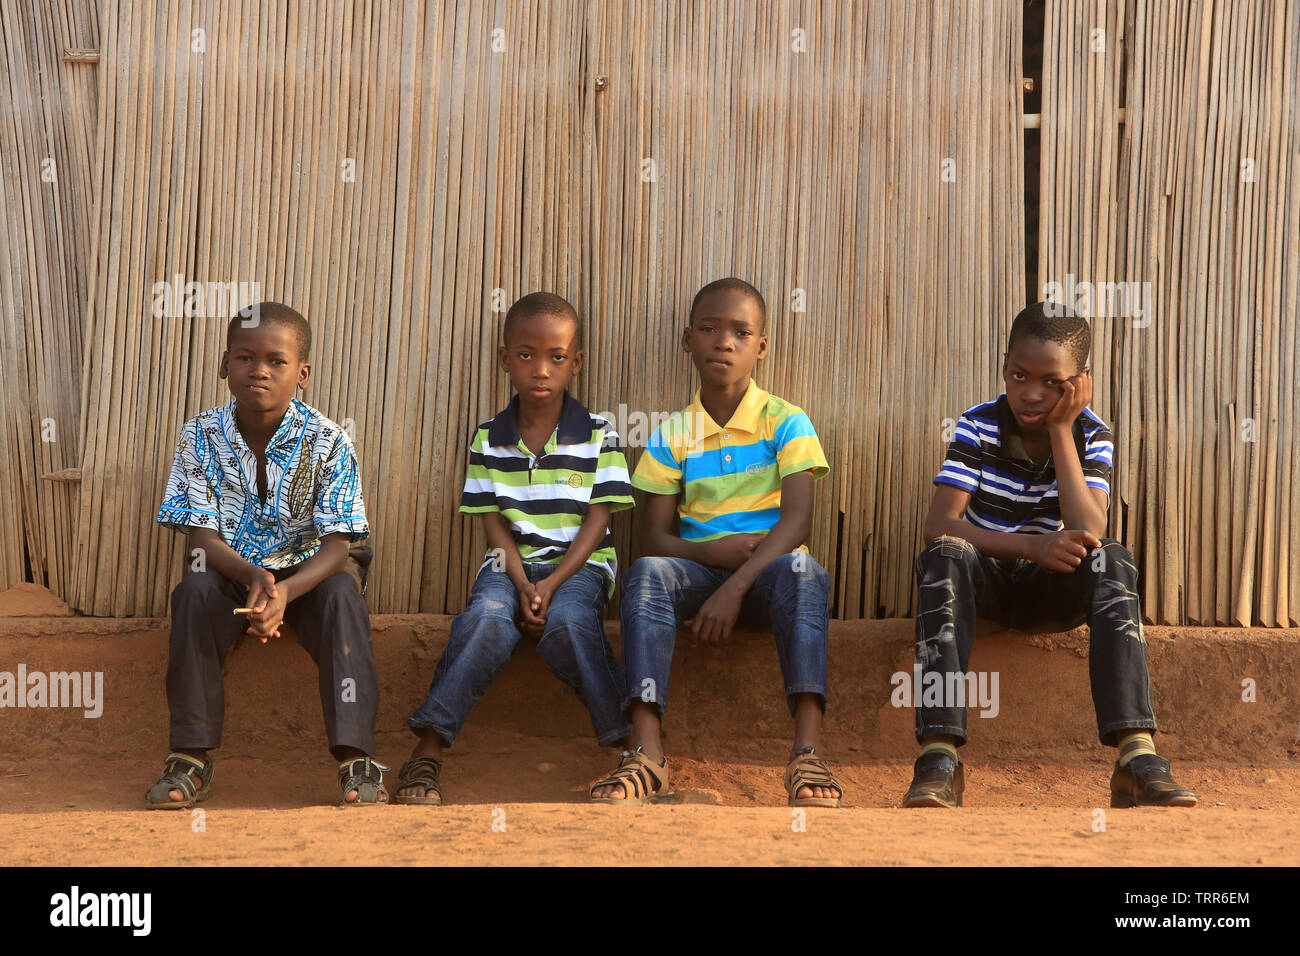 Jeunes enfants togolais Ailly sur un-muret. Atakpamé. Togo. Afrique de l'Ouest. Stockfoto